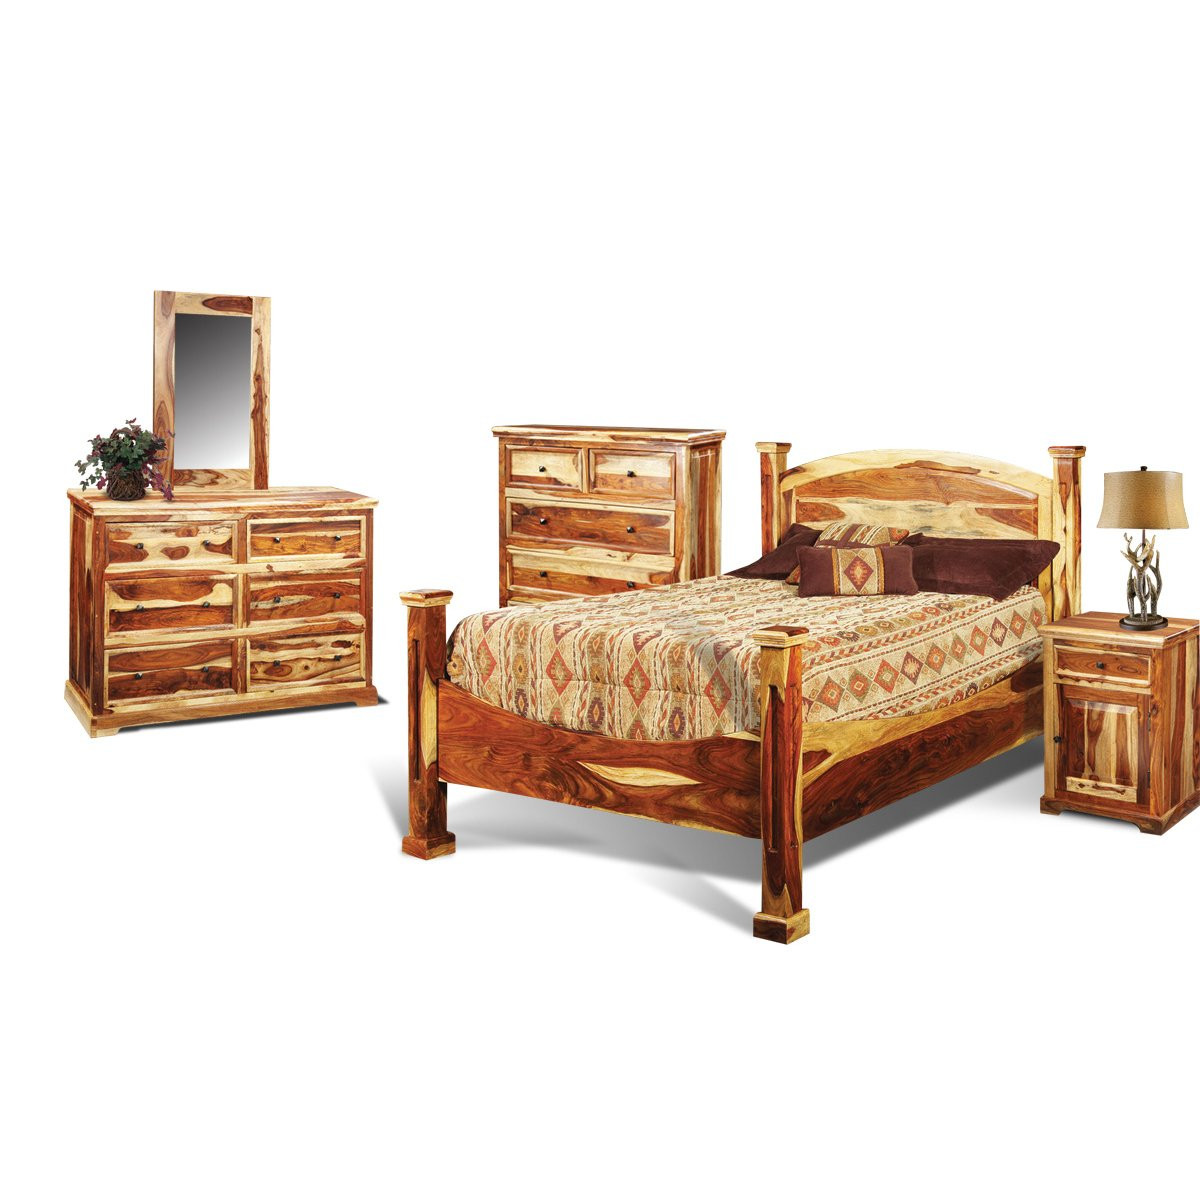 Rustic King Bedroom Sets
 Tahoe Pine Rustic 6 Piece King Bedroom Set